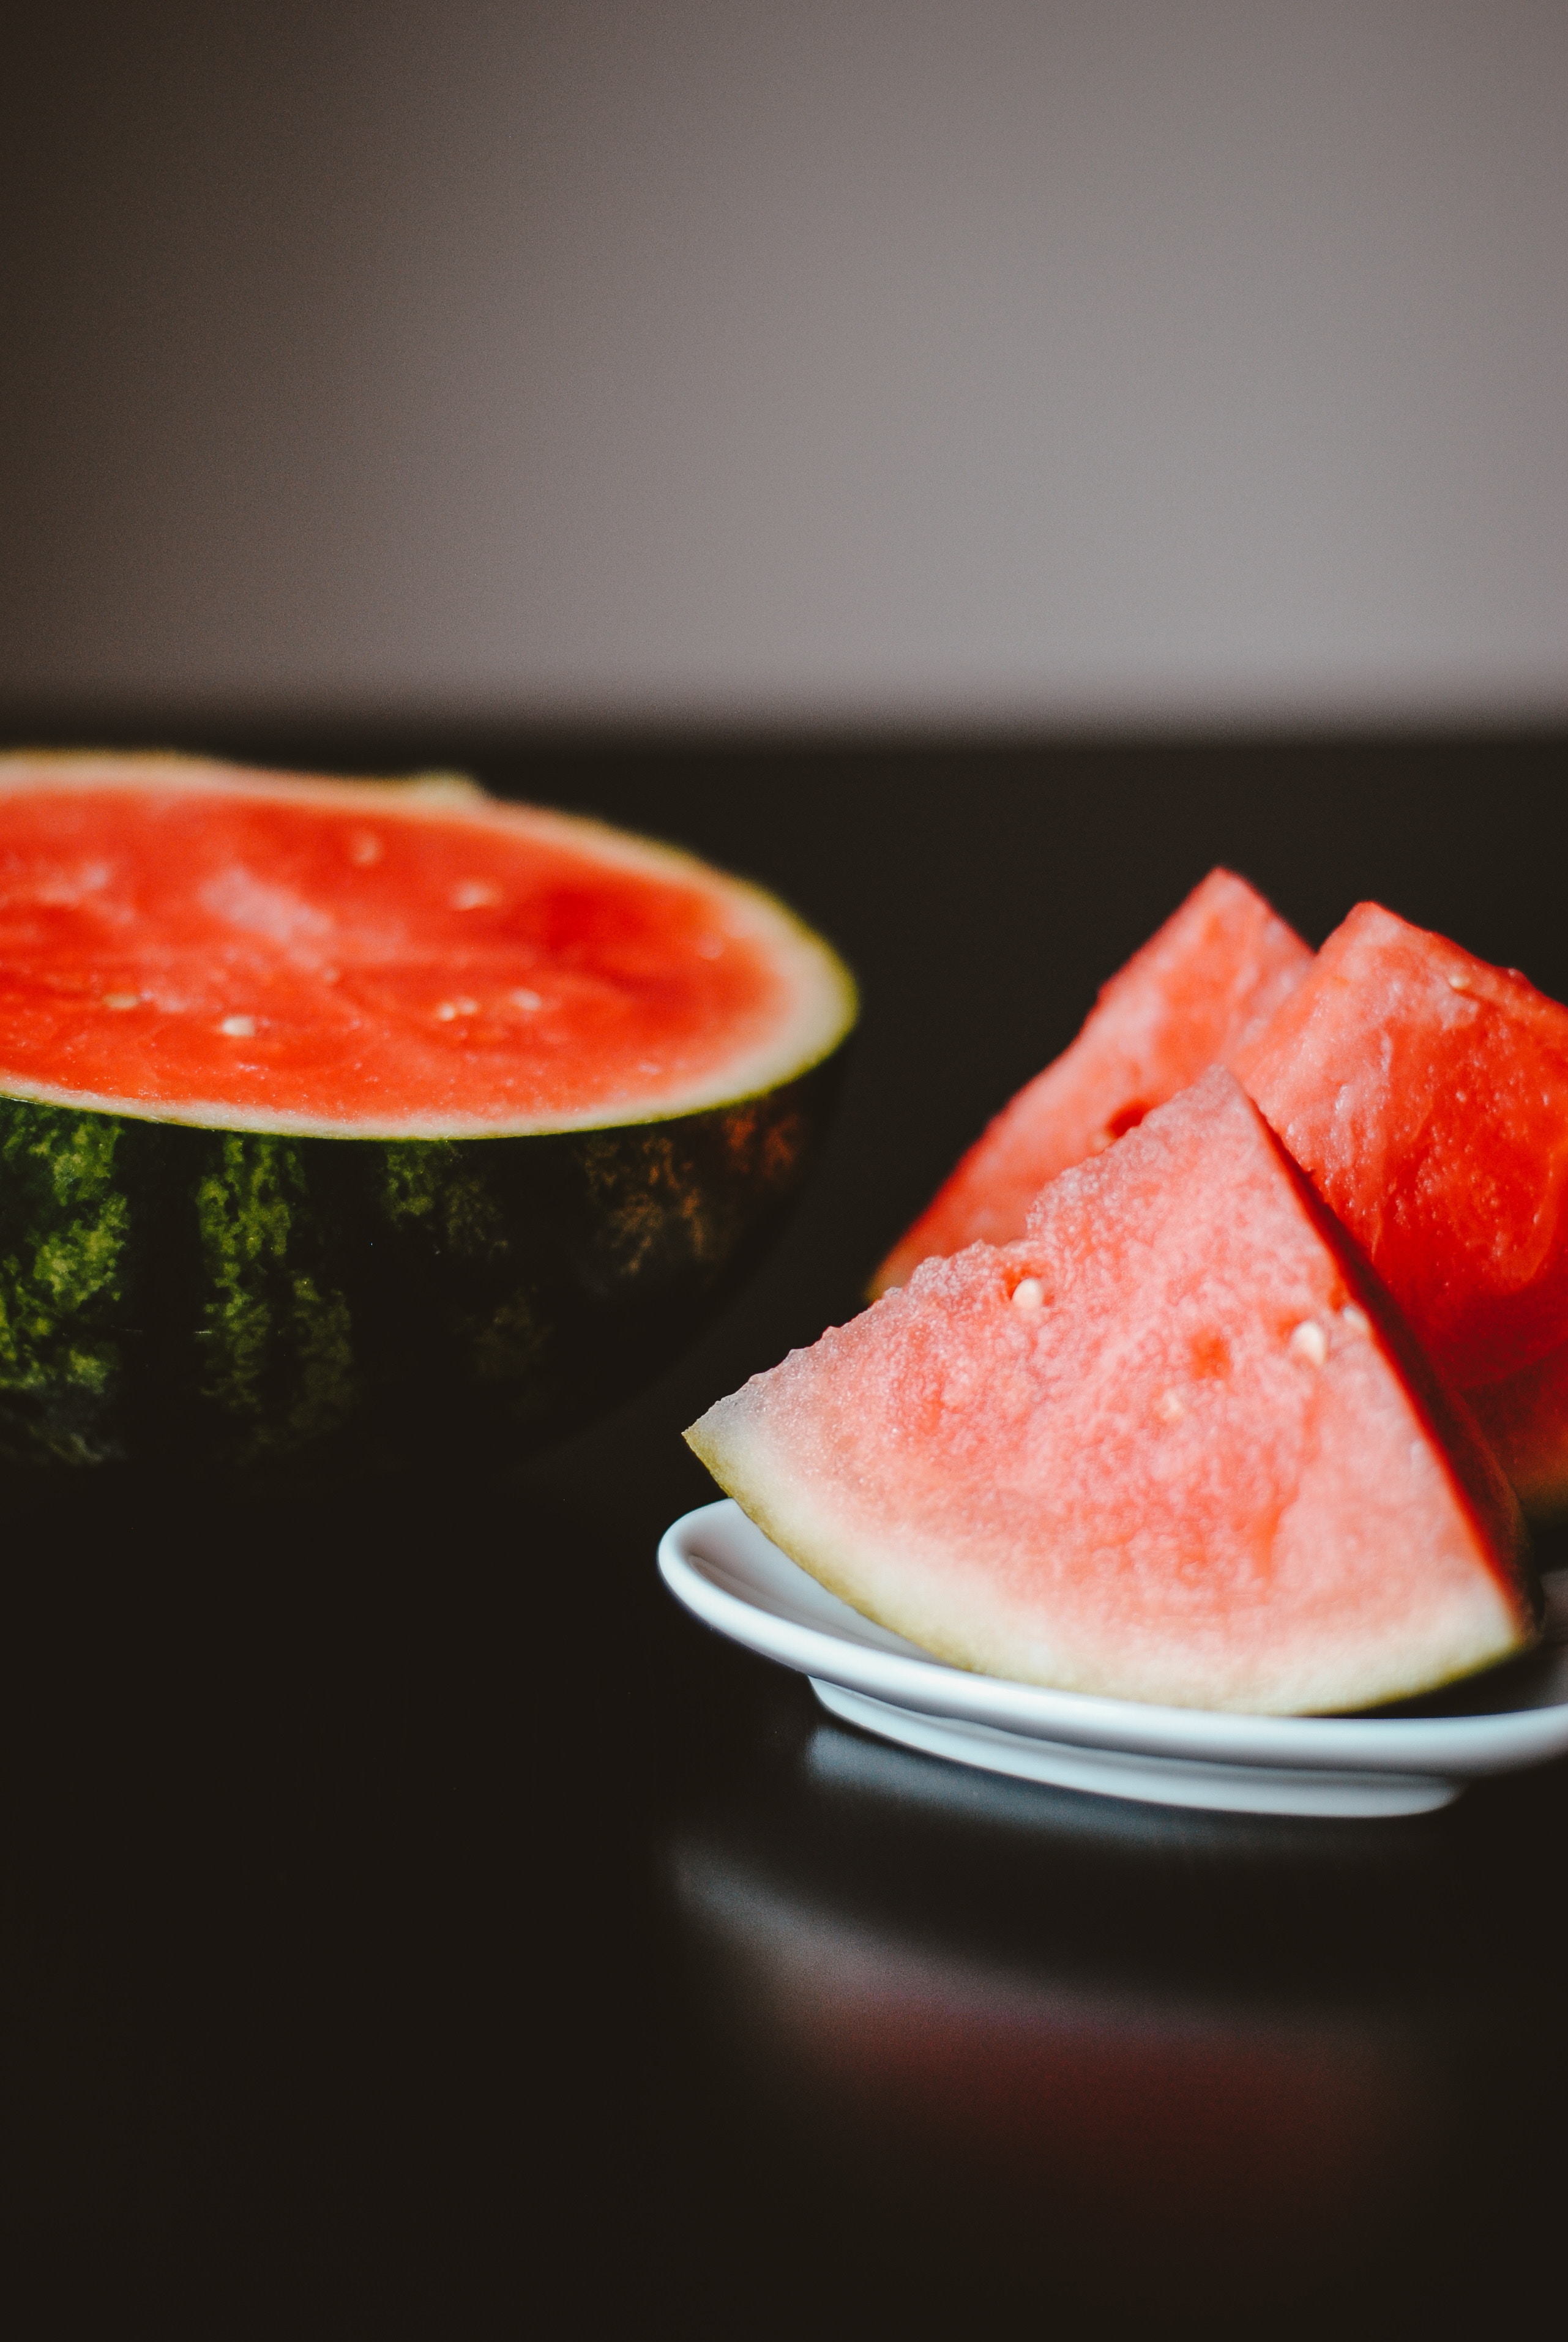 water melon| Summer drinks| beat the heat| summer fruits| summer coolers |sun stroke | heat| dehydration